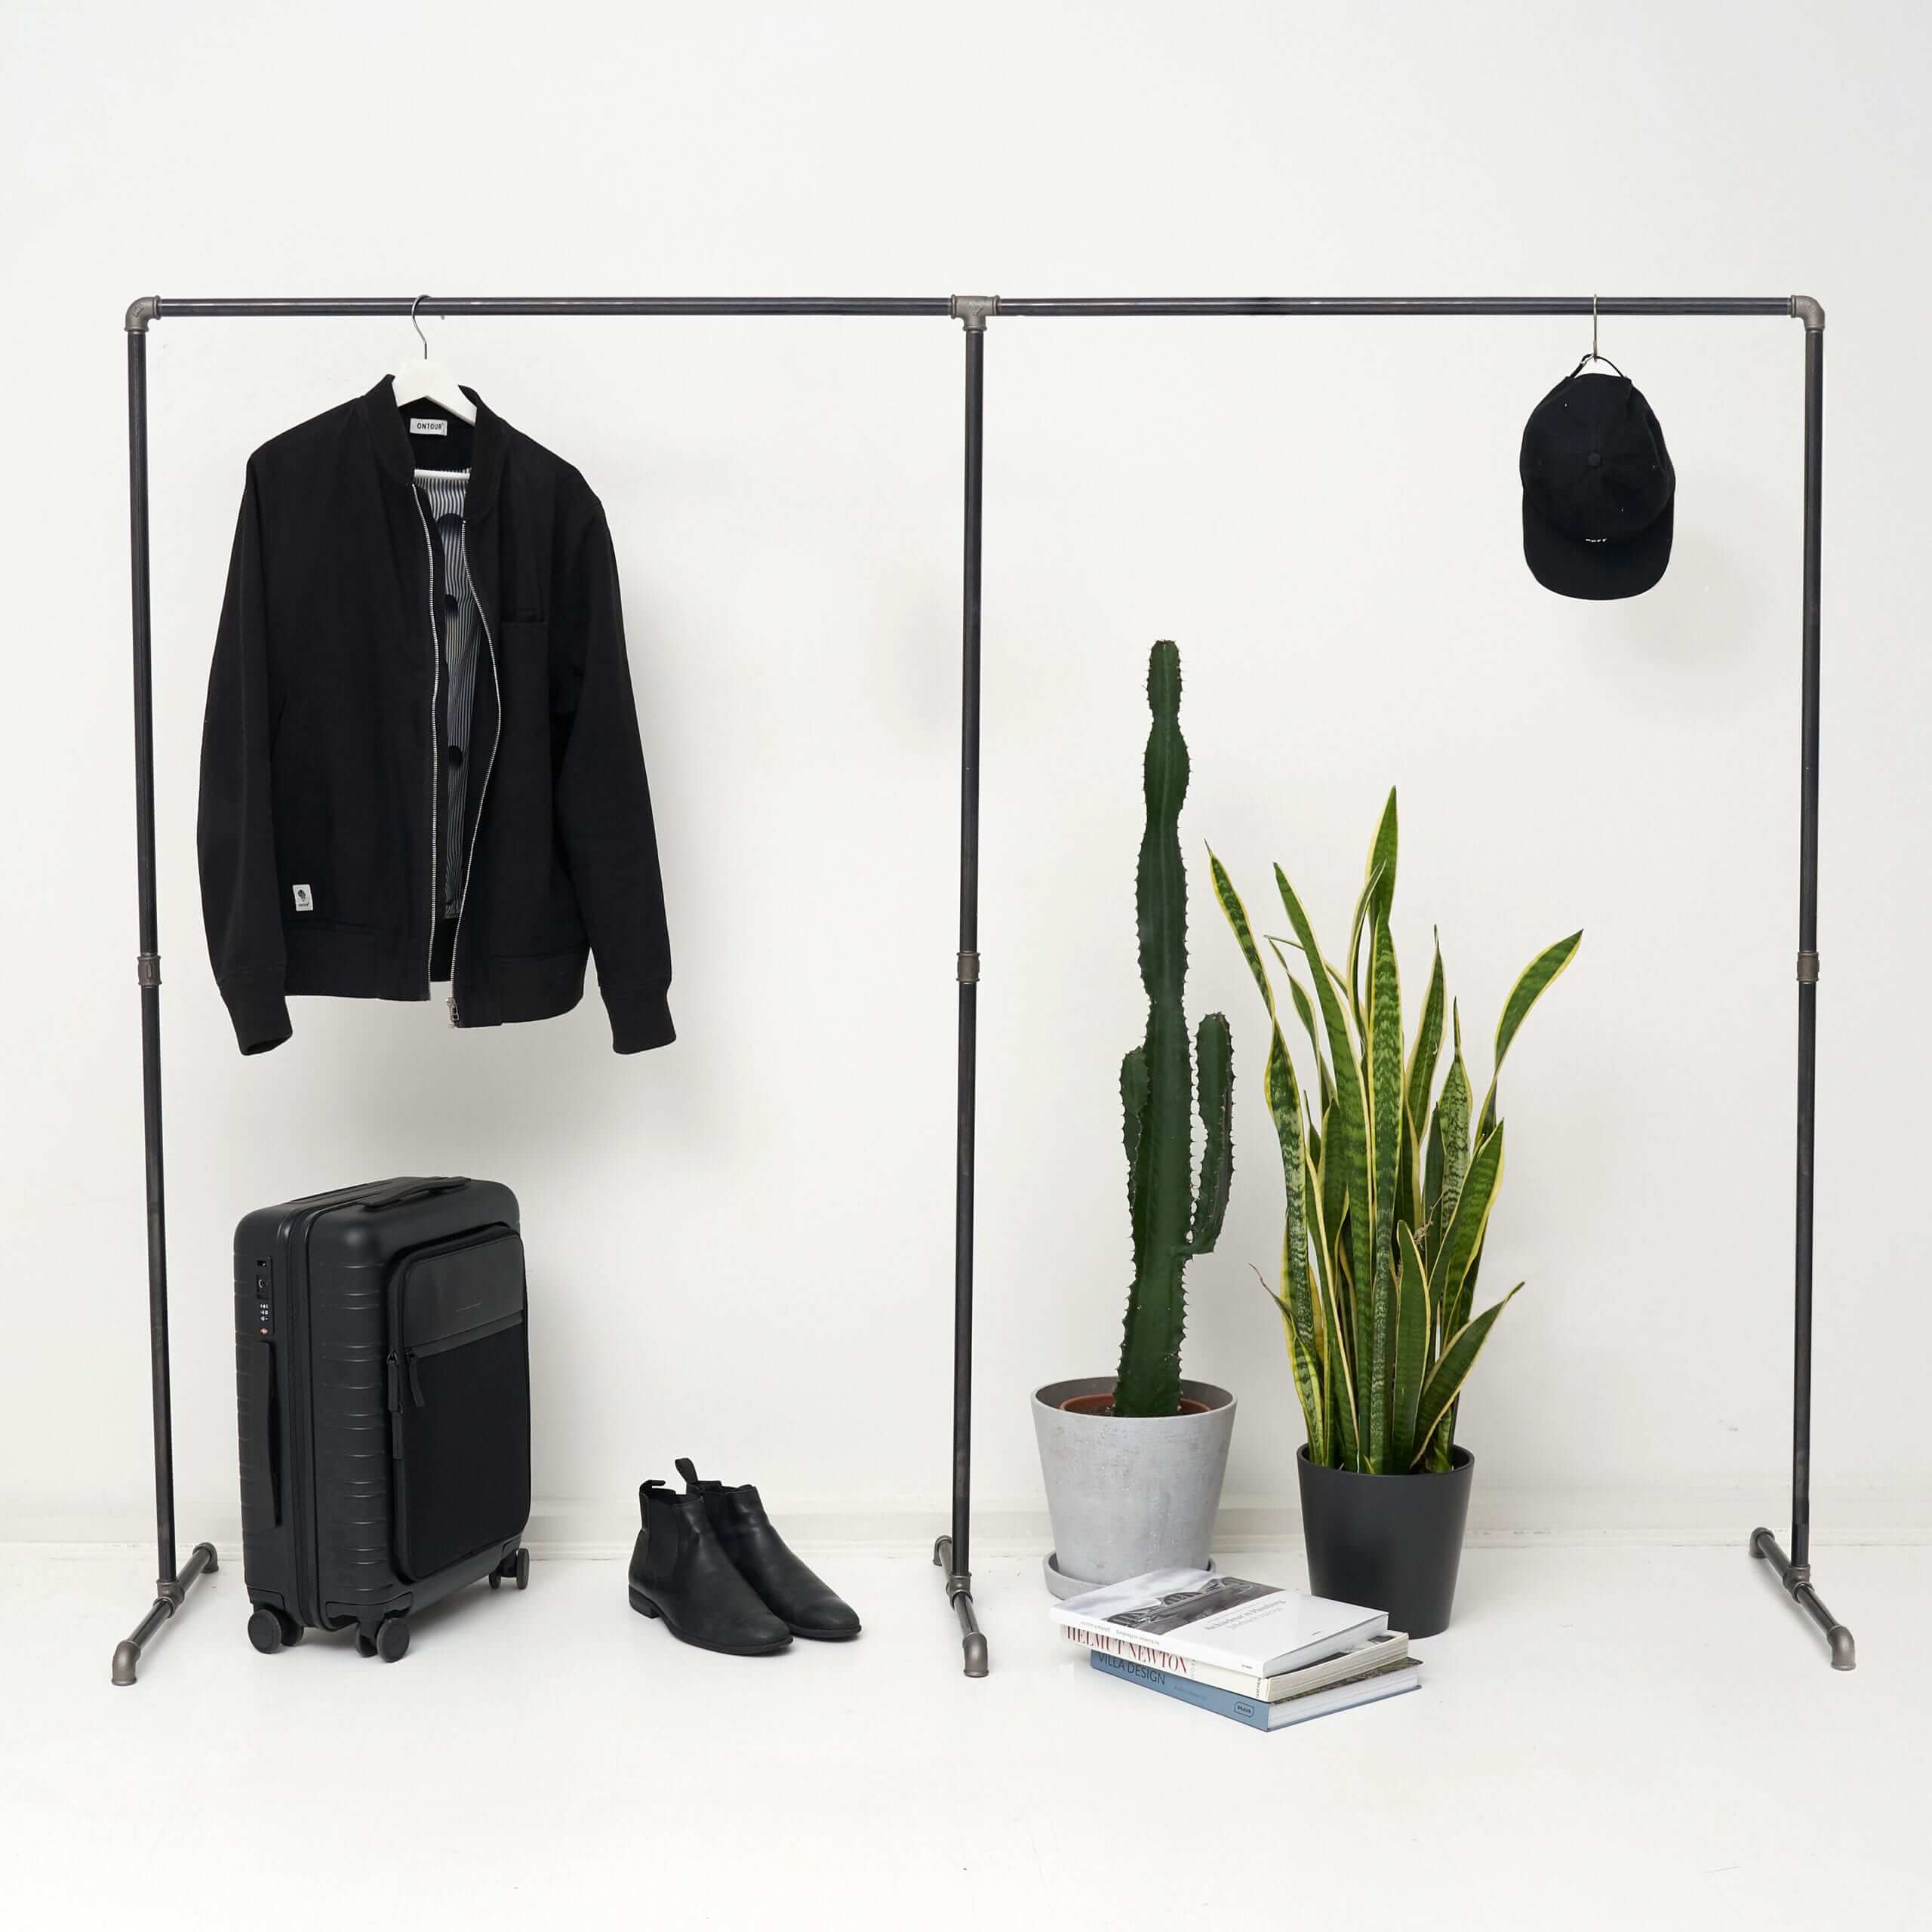 Freistehende Kleiderstange LOFT EIGHT, Kleiderständer im Industrial Design, perfekt als Garderobe